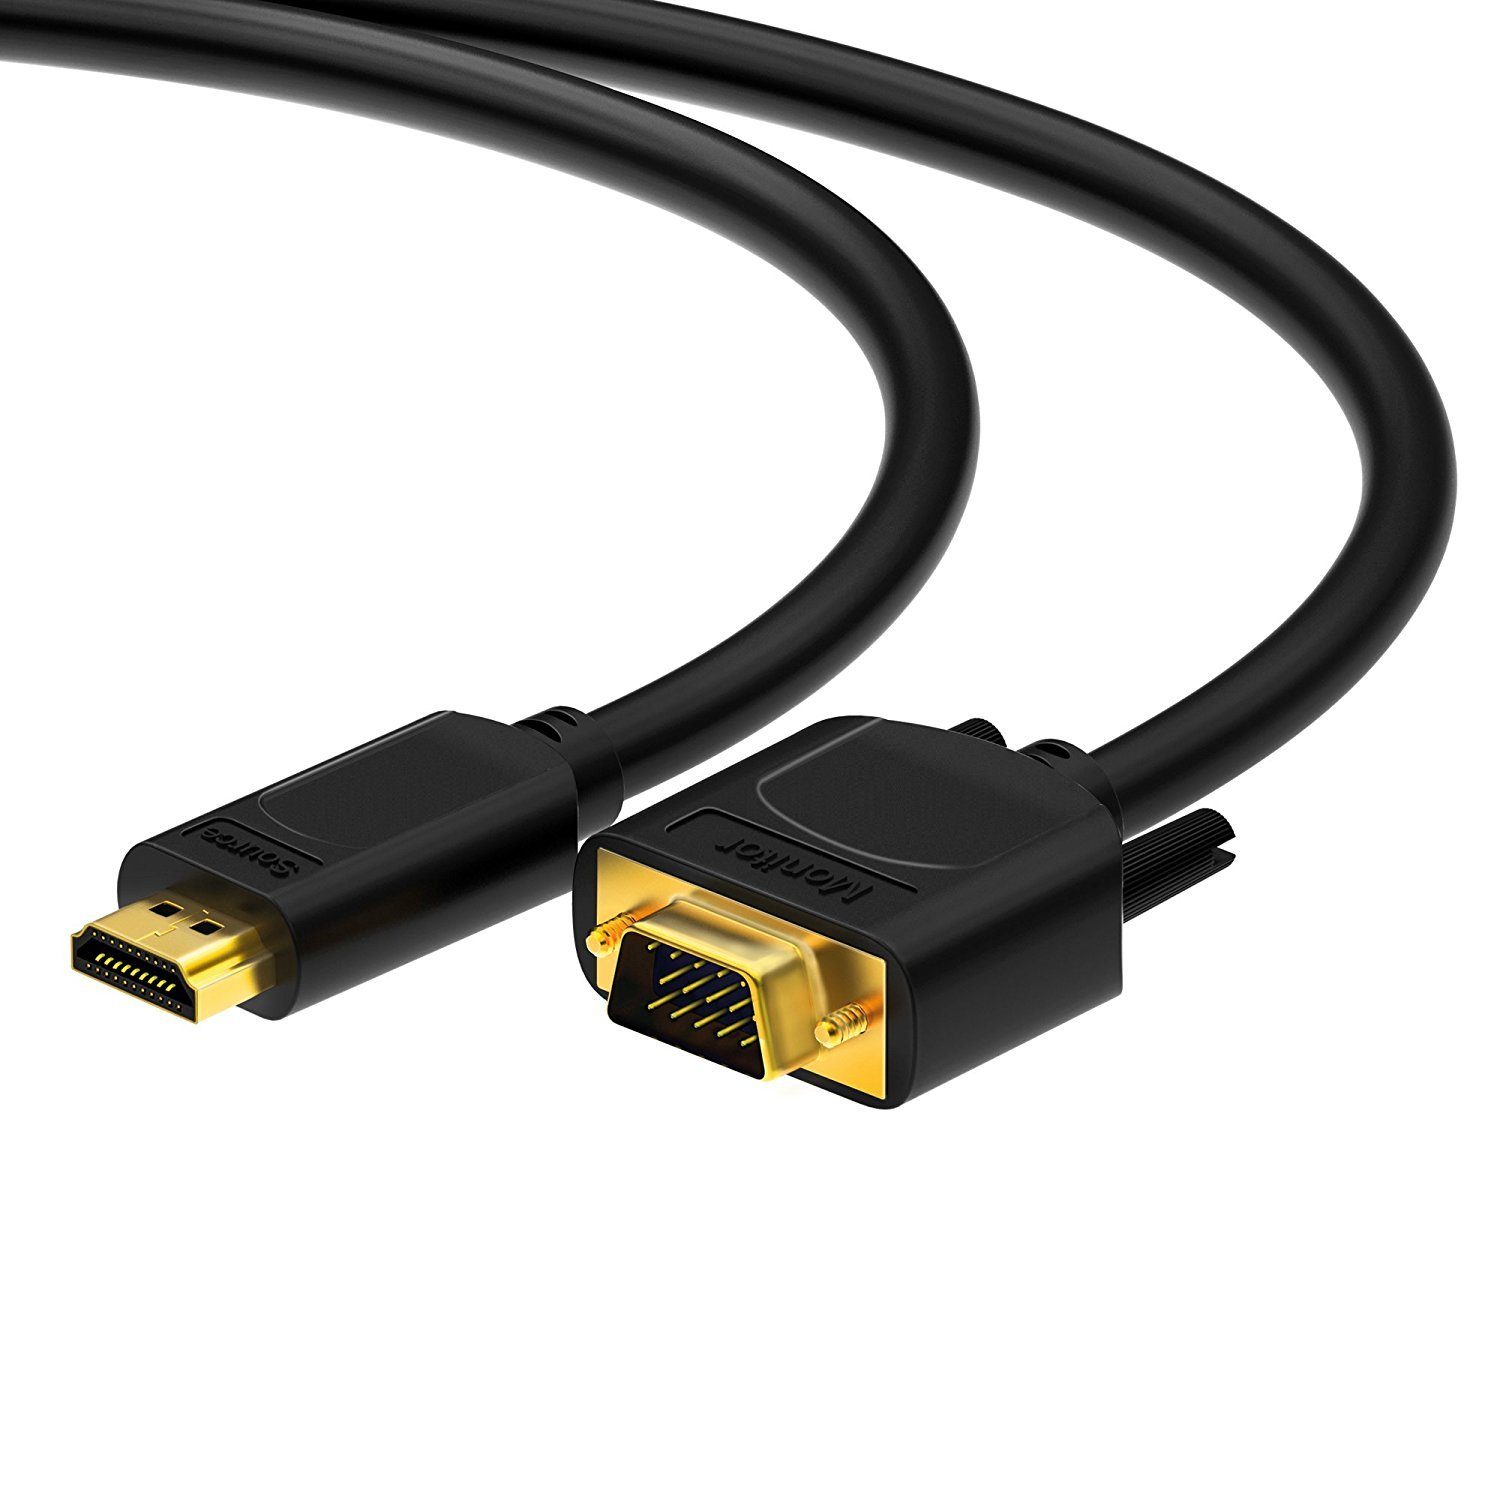 HDGear »HDSupply X-HC110-030 HDMI auf VGA Kabel 3 m vergol« HDMI-Kabel  online kaufen | OTTO